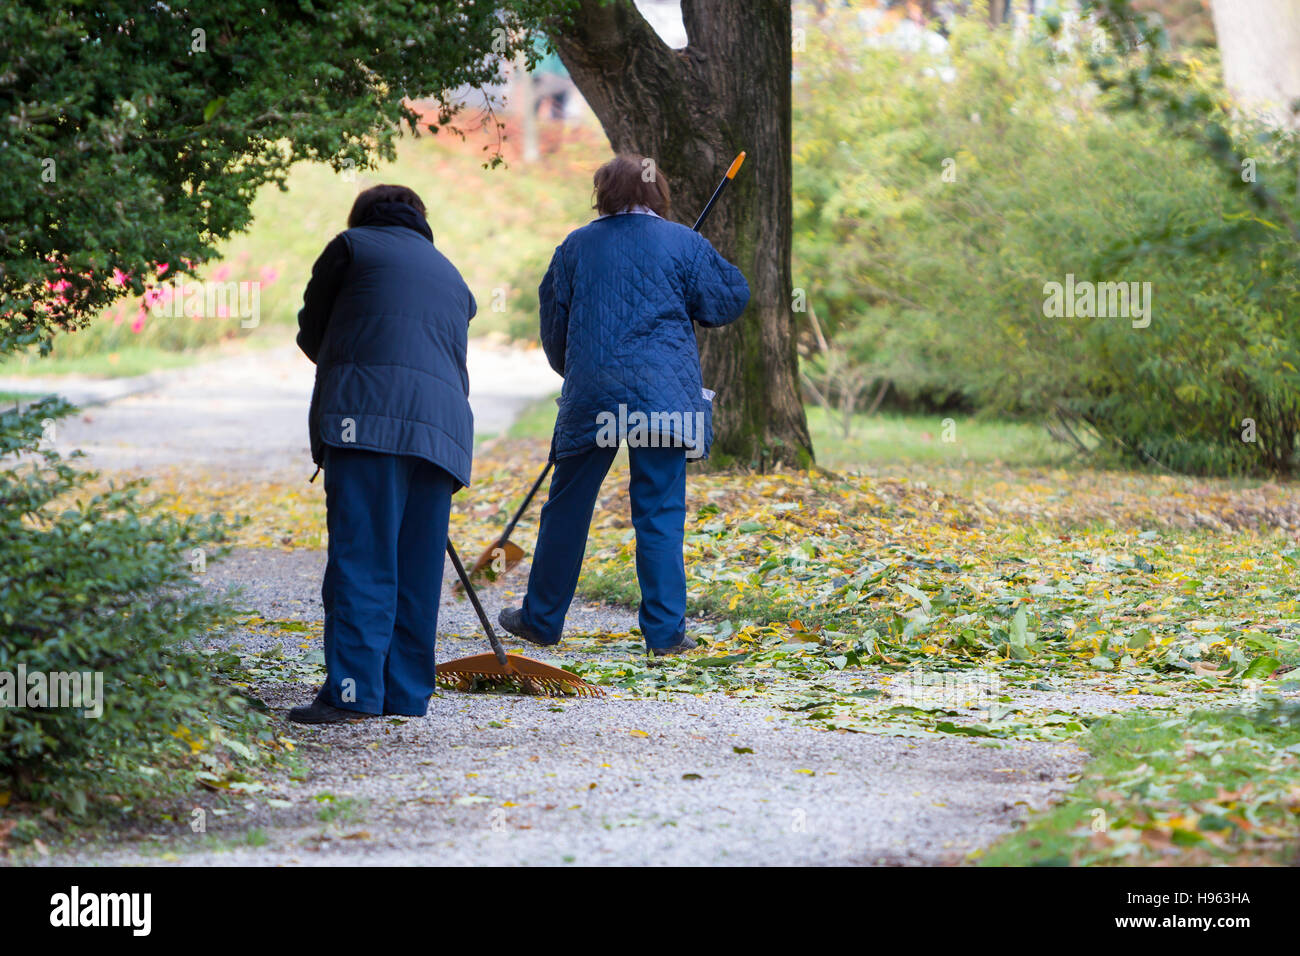 Women Gardener raking fall leaves in city park Stock Photo